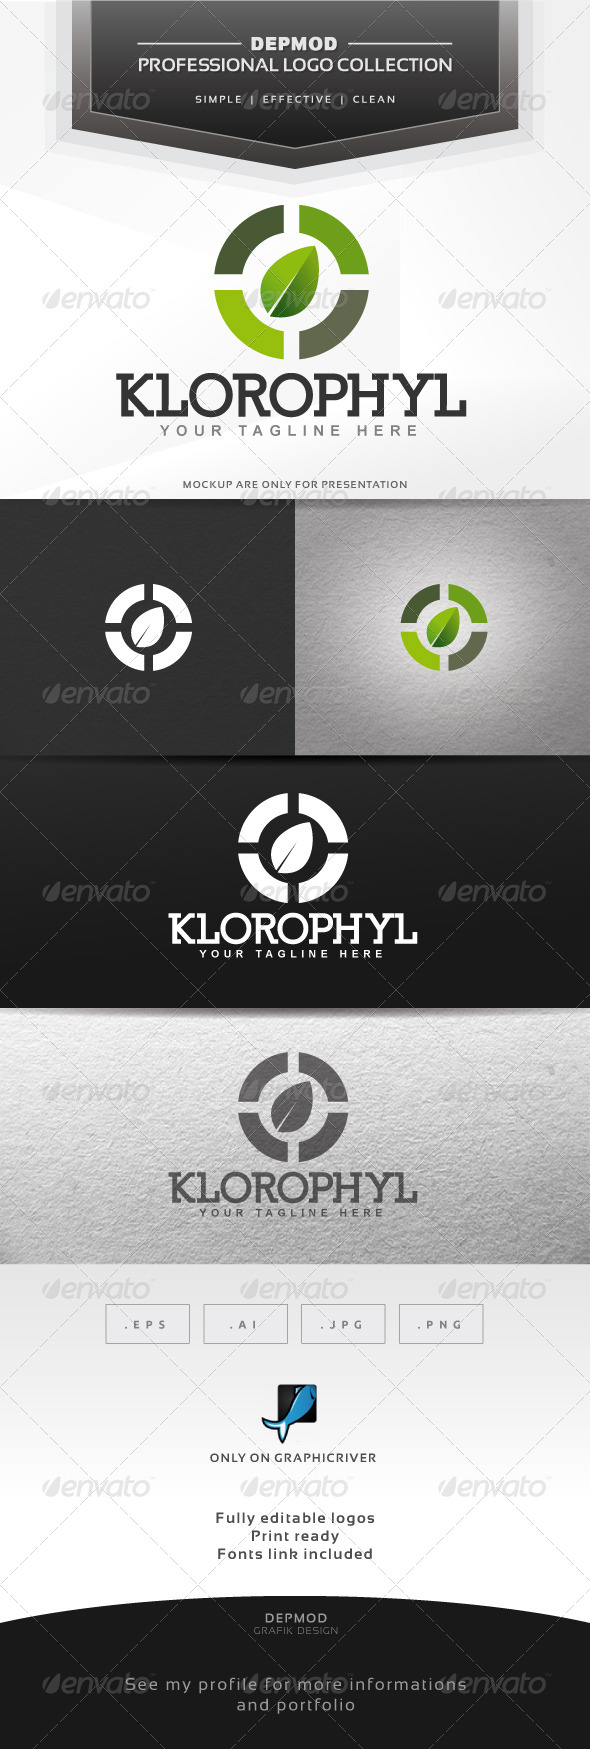 KIorophyl Logo